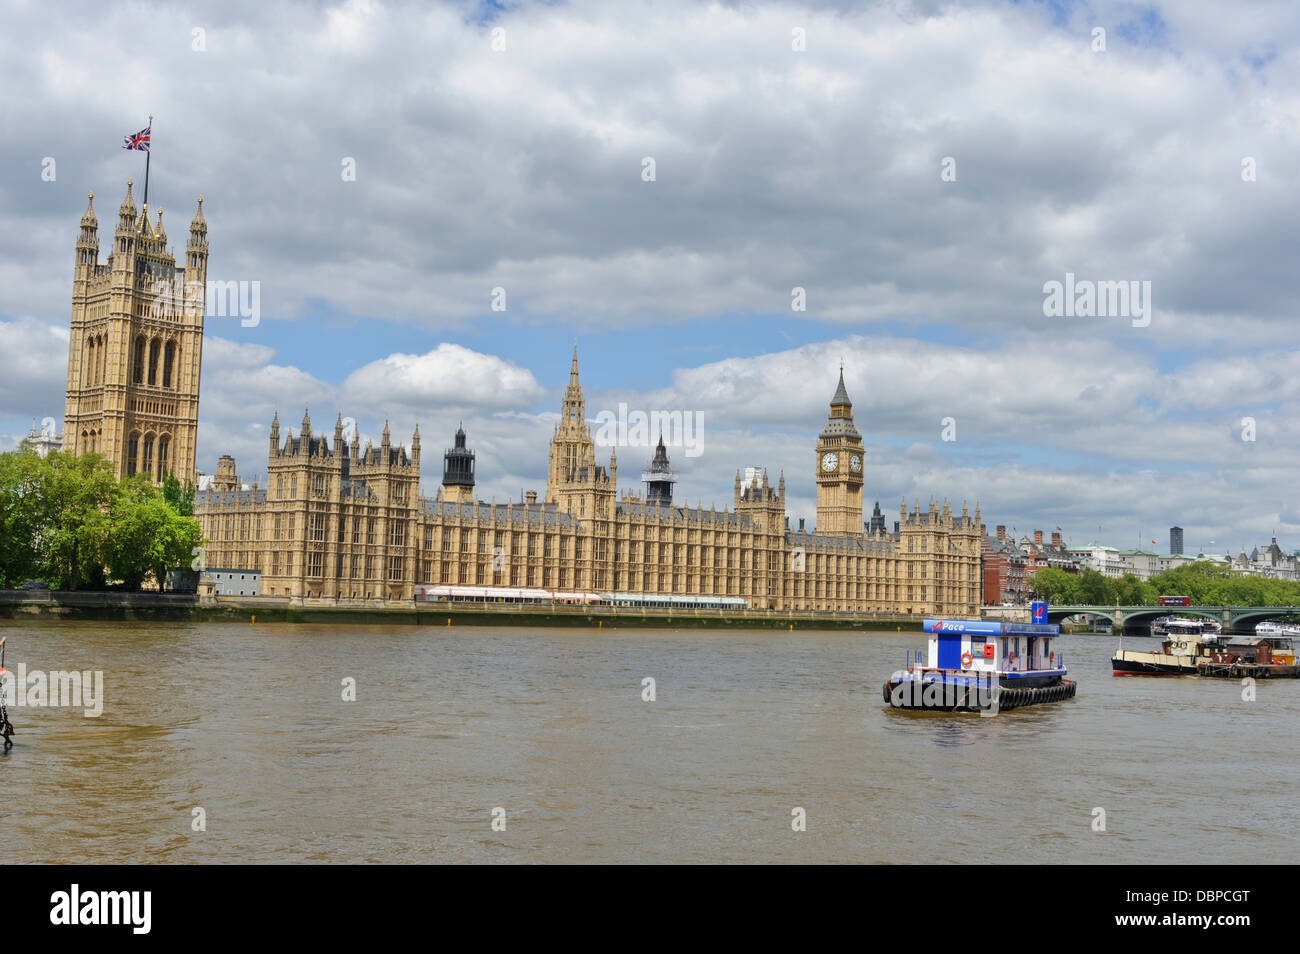 Palace of Westminster, London, England, United Kingdom. Stock Photo